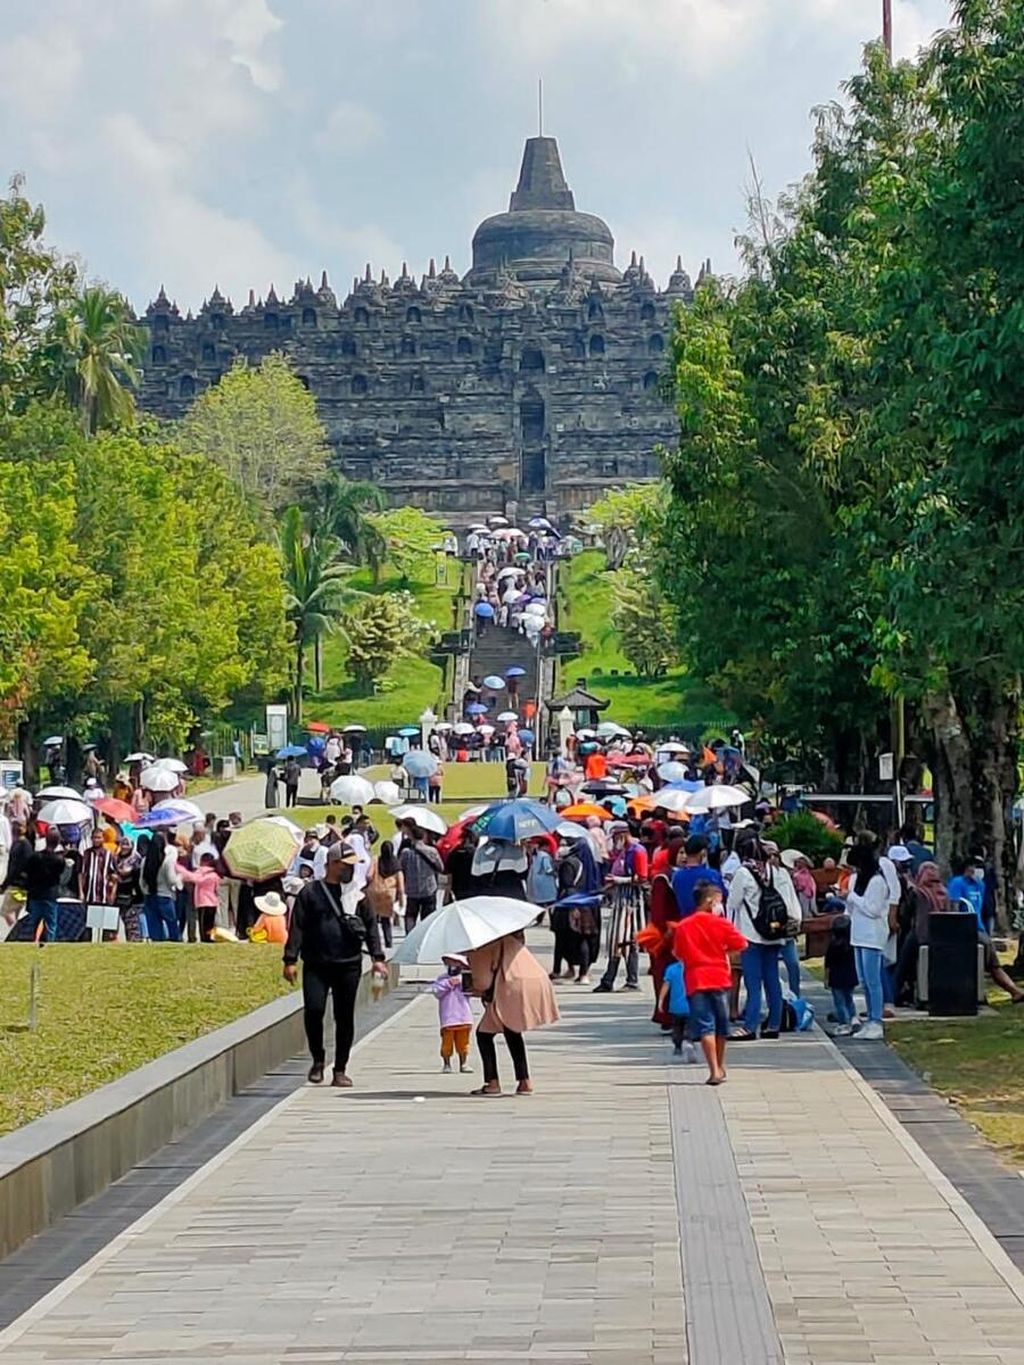 Jumlah wisatawan Candi Borobudur meningkat pesat selama libur Lebaran. Namun, jumlah wisatawan tetap belum mencapai situasi saat normal sebelum pandemi.